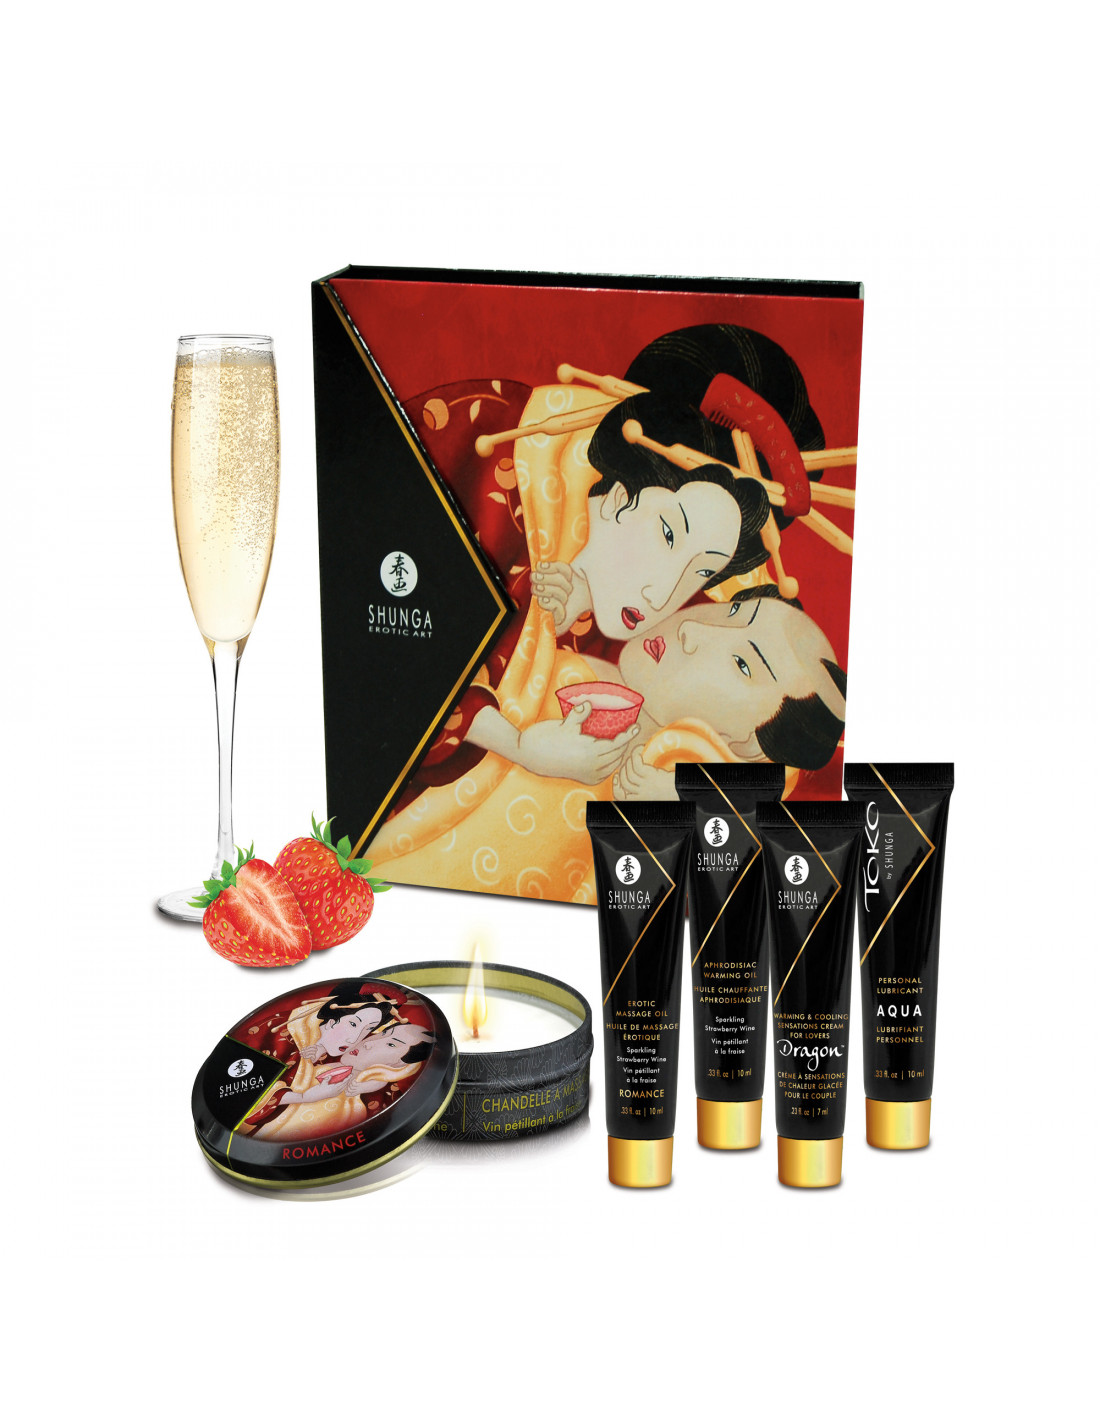 Shunga Coffret secret de geisha E2wBg6bN